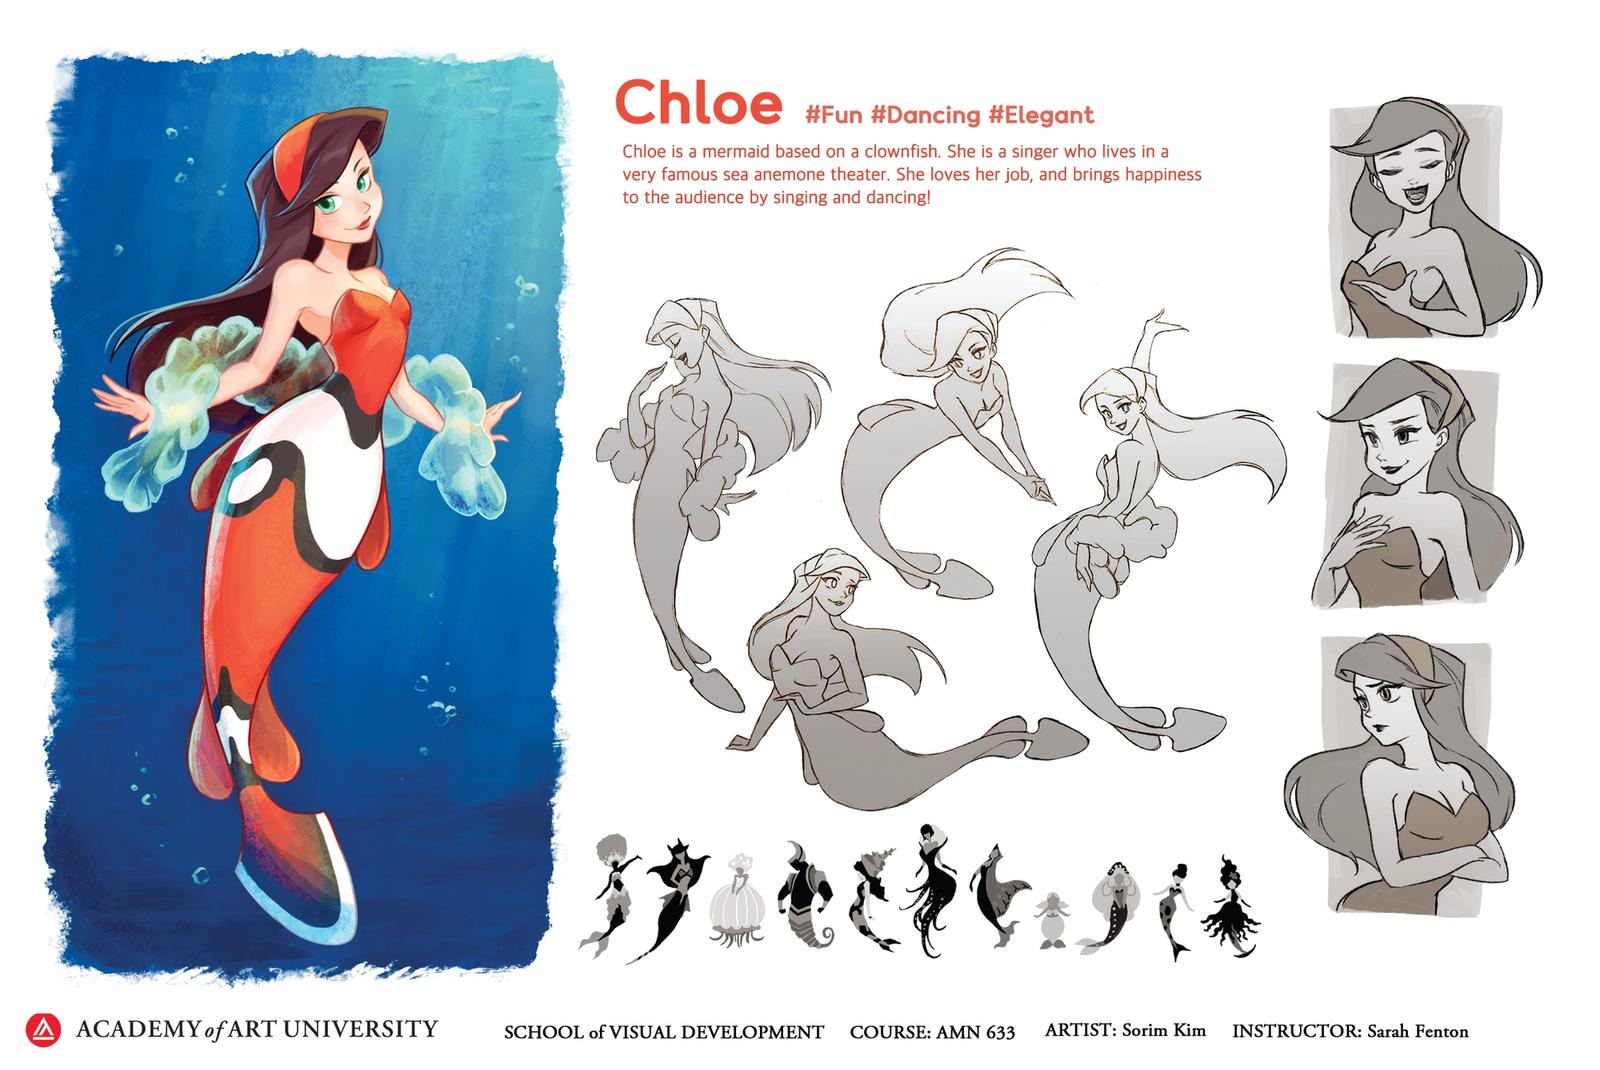 Chloe, The Dancing Mermaid